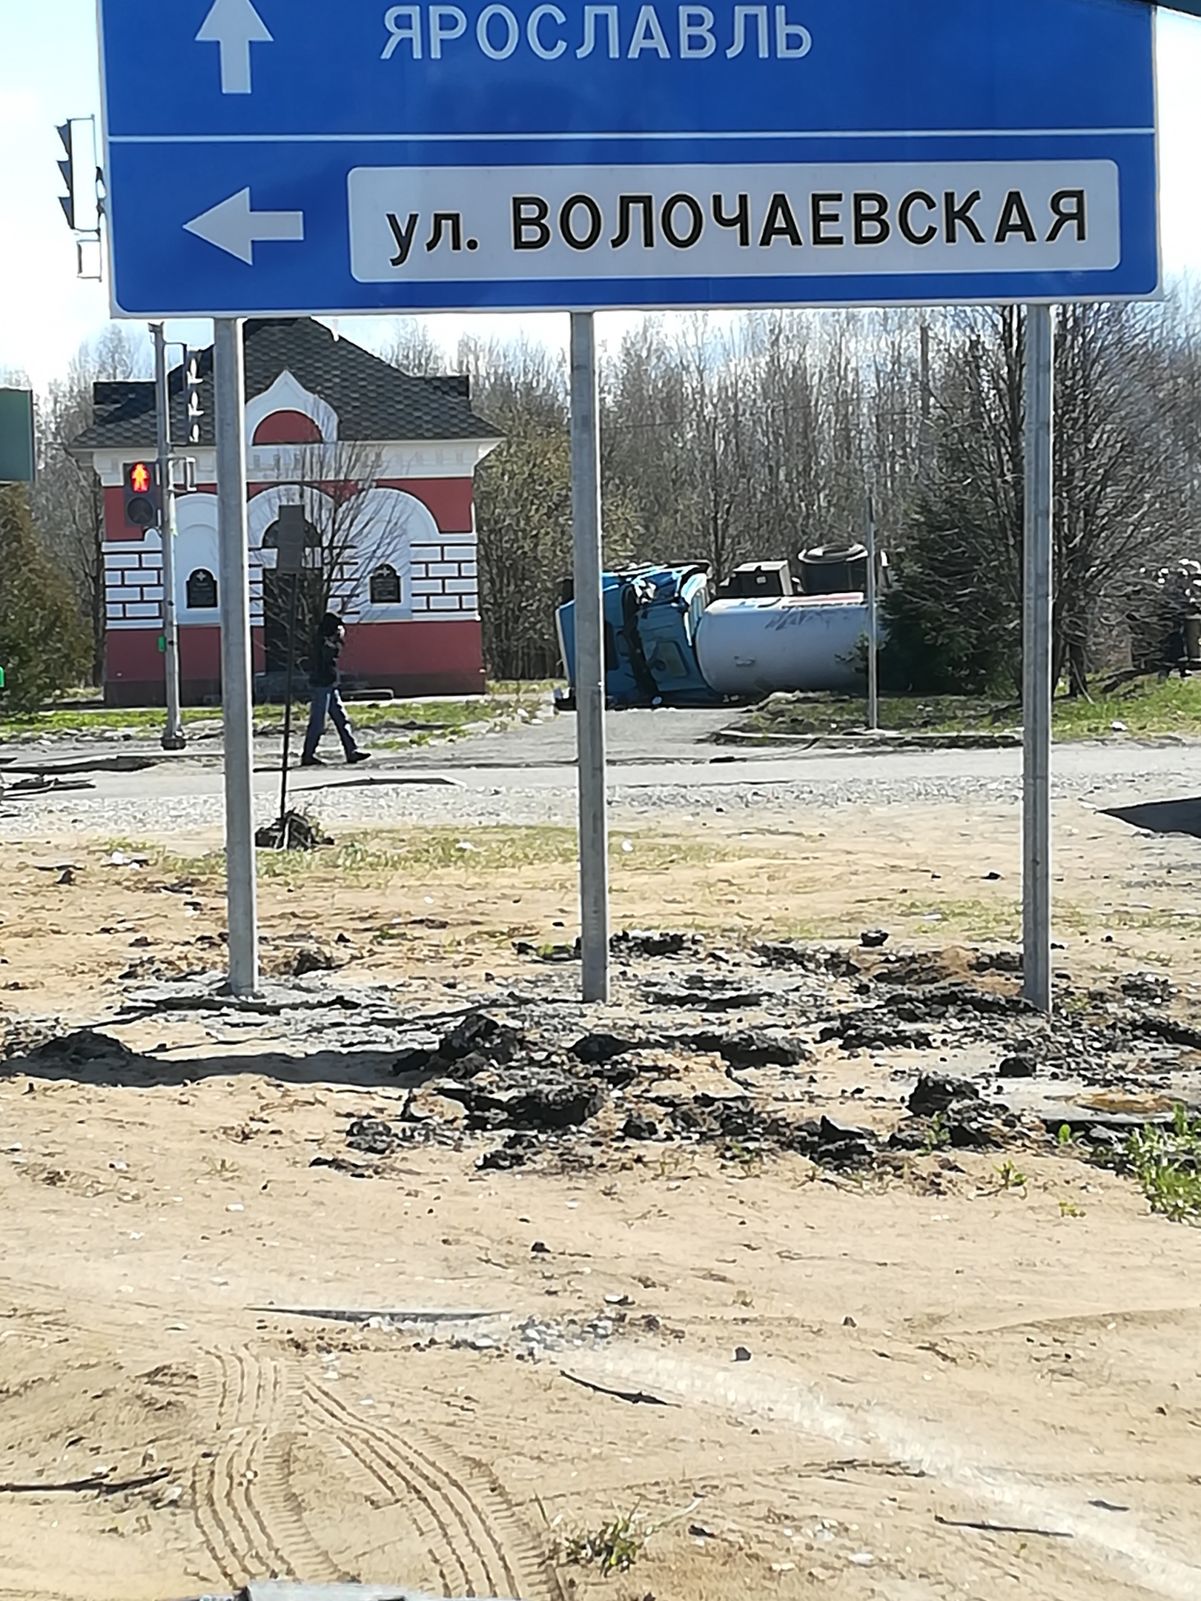 В Рыбинске у кладбища перевернулся грузовик с цистерной: произошла утечка газа